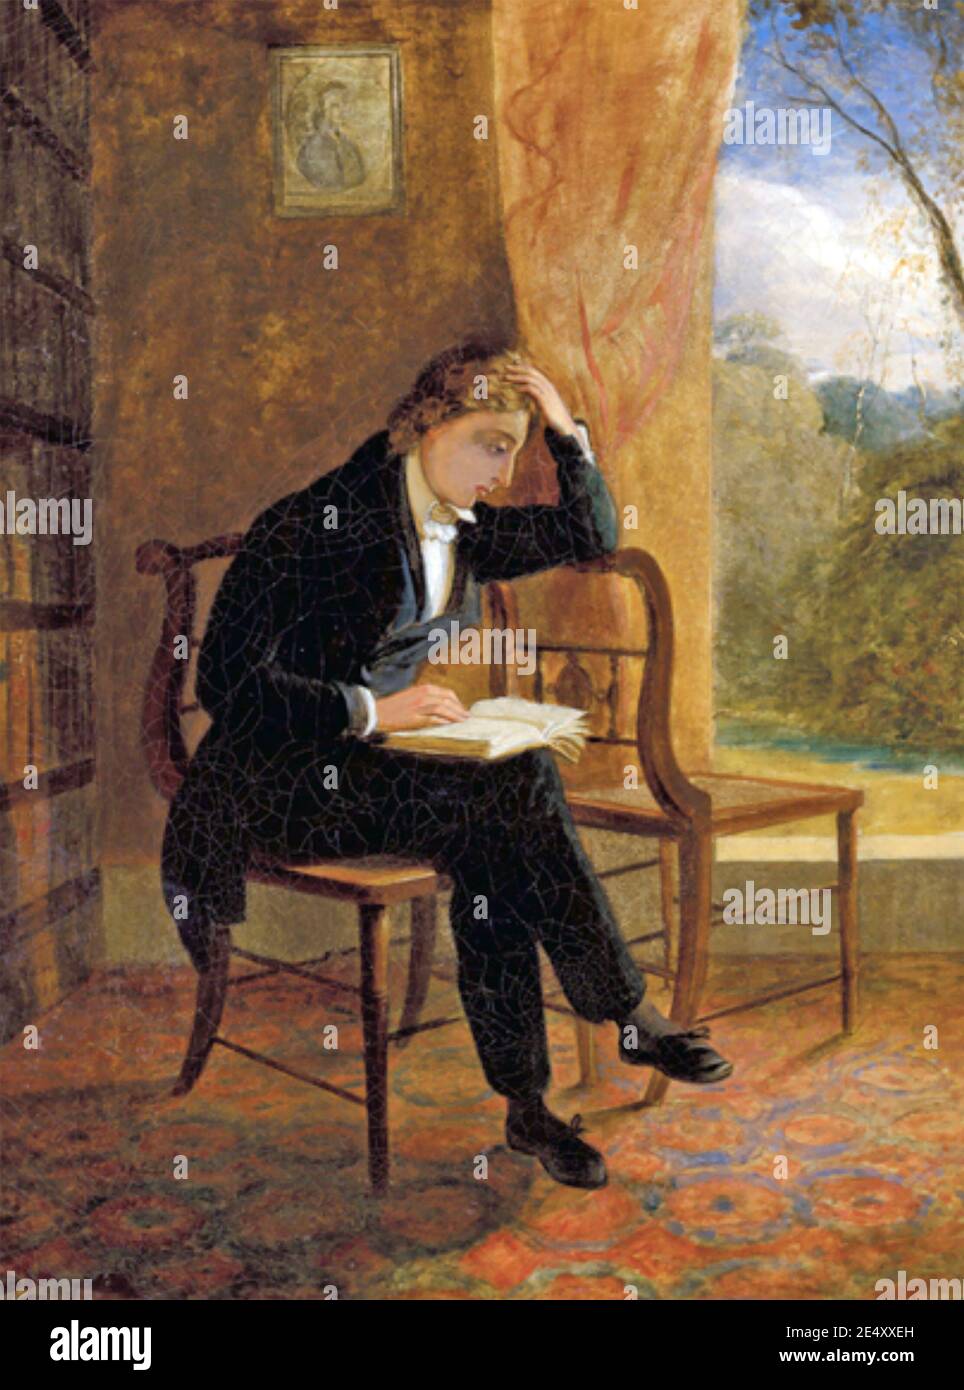 JOHN KEATS (1795-1821) poète anglais. Peinture de Joseph Severn en 1834 intitulée 'Portrait de John Keats à Wentworth place le jour de sa composition Ode à une Nightingale' Banque D'Images